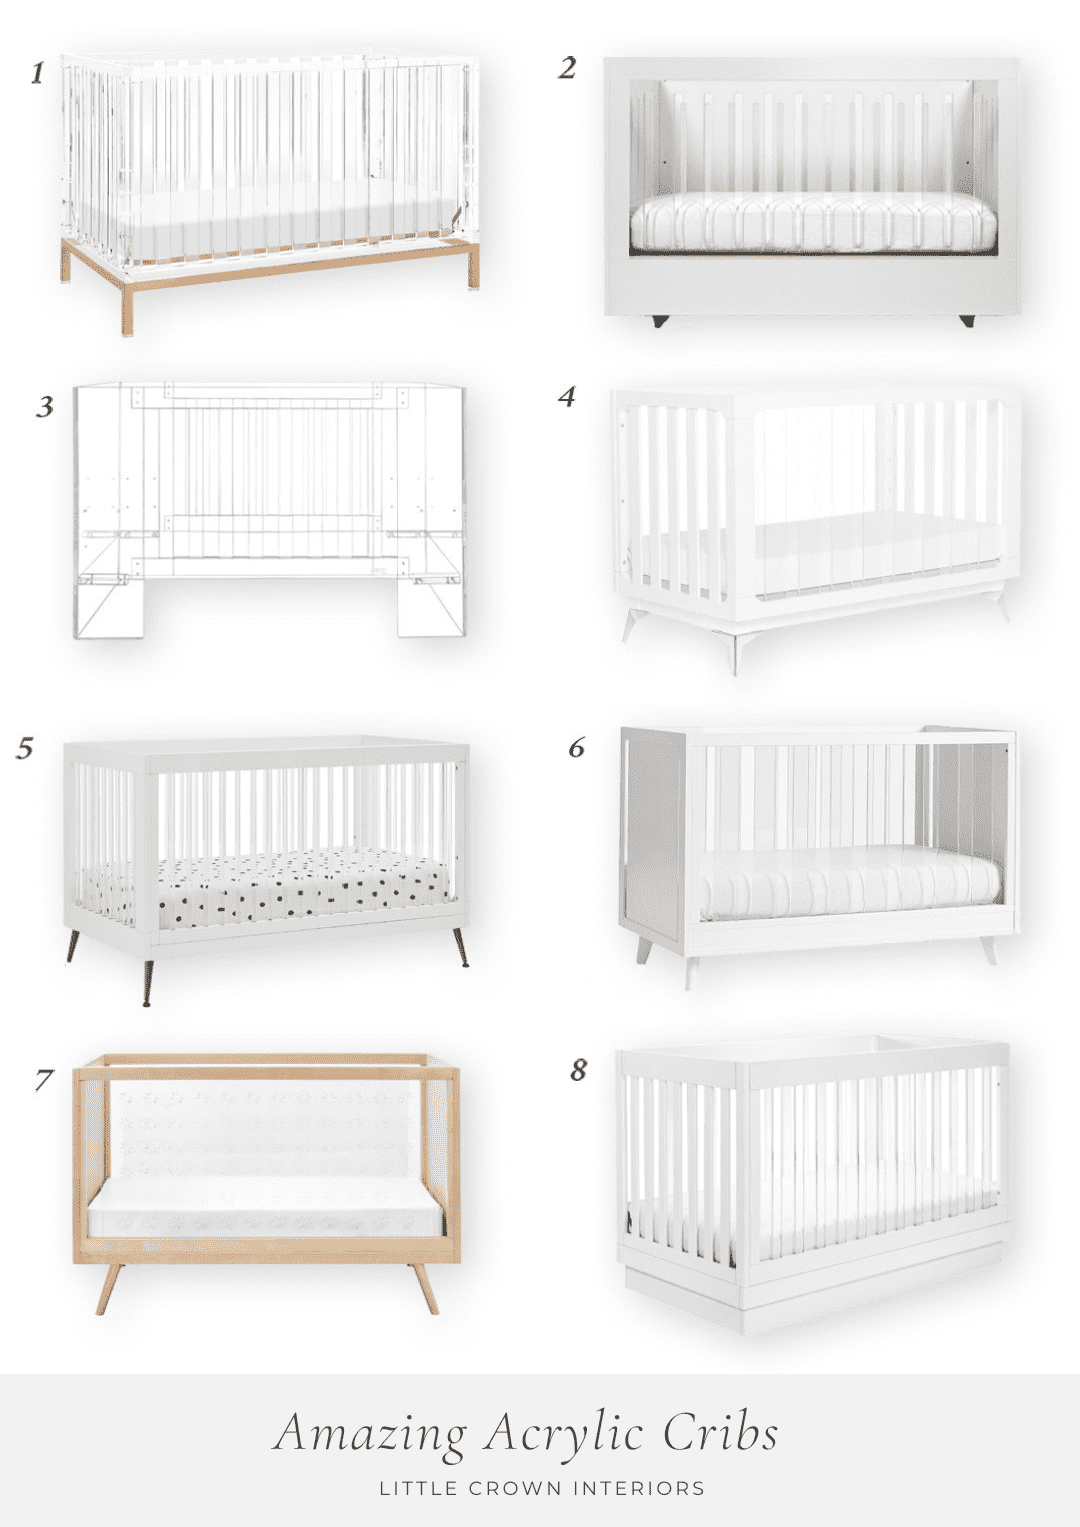 The Best Acrylic Cribs for the Nursery